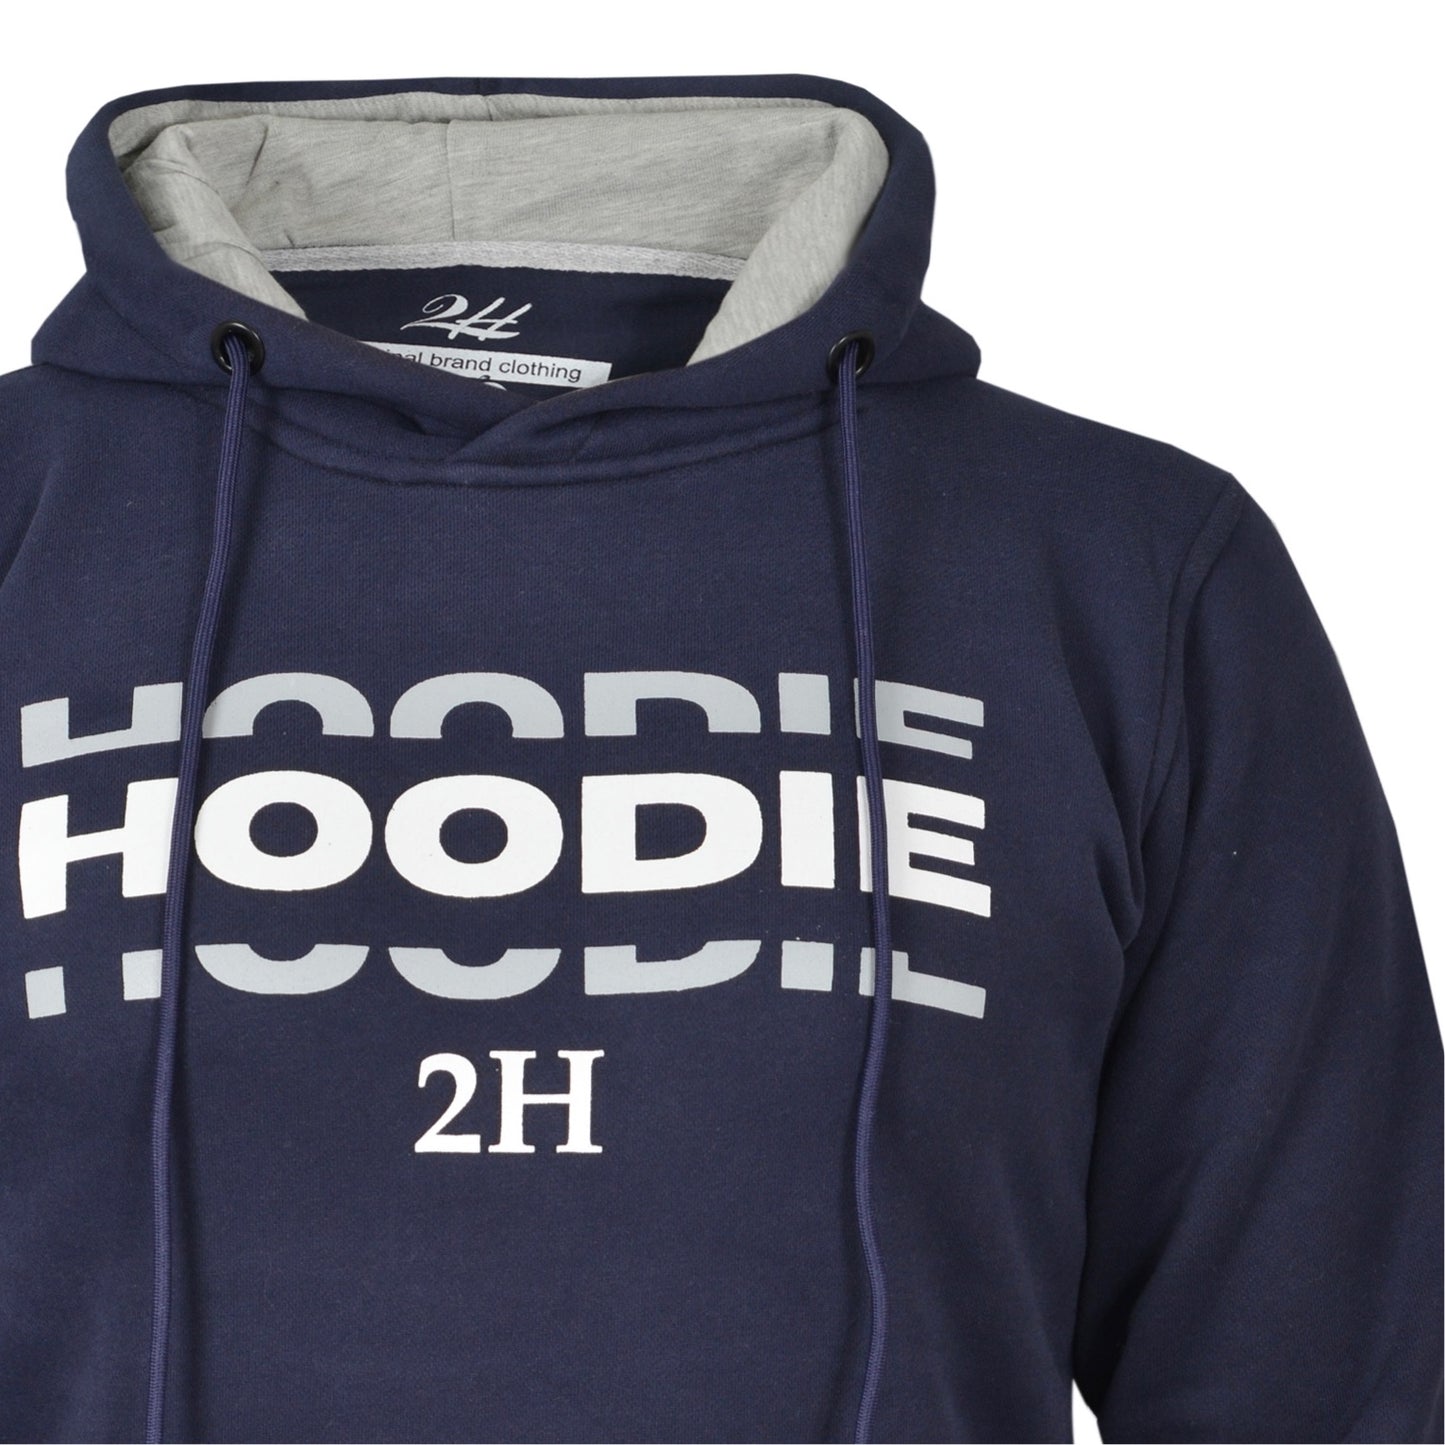 2H Navy Men Sweater Printed Warm Hoodie